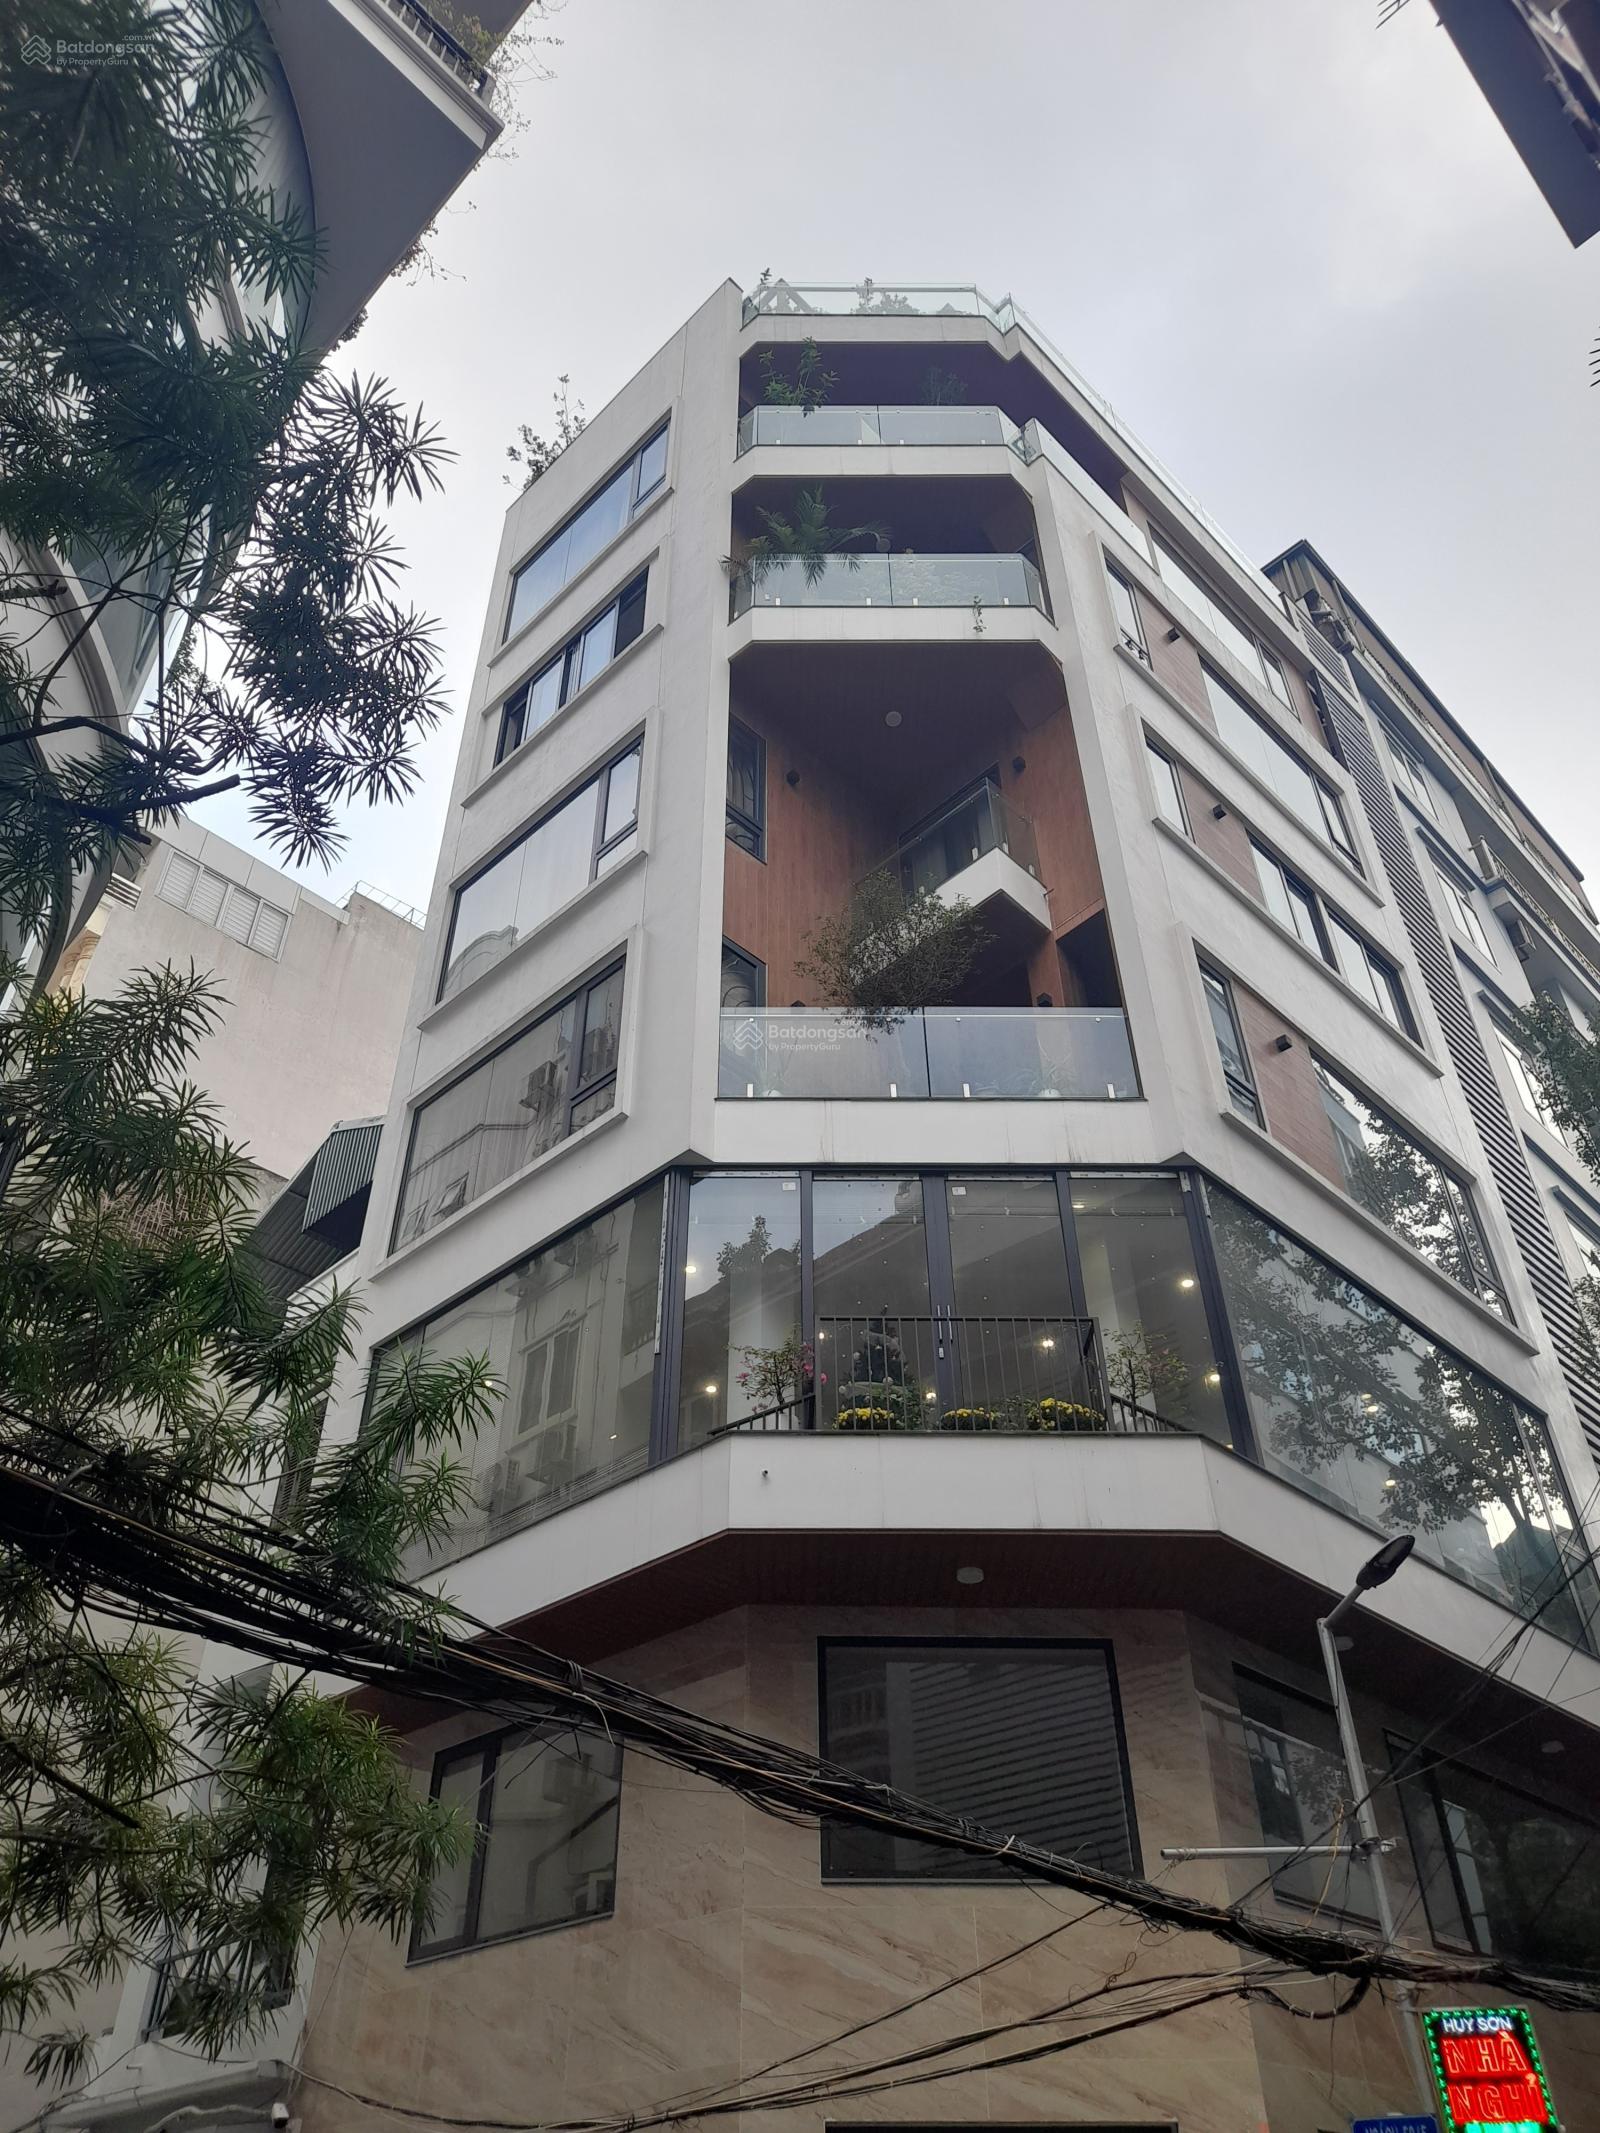 Một tòa nhà 8 tầng tại phố Ngụy Như Kon Tum, Hà Nội đang được rao bán, khởi điểm từ 20,5 tỷ đồng - Ảnh 1.